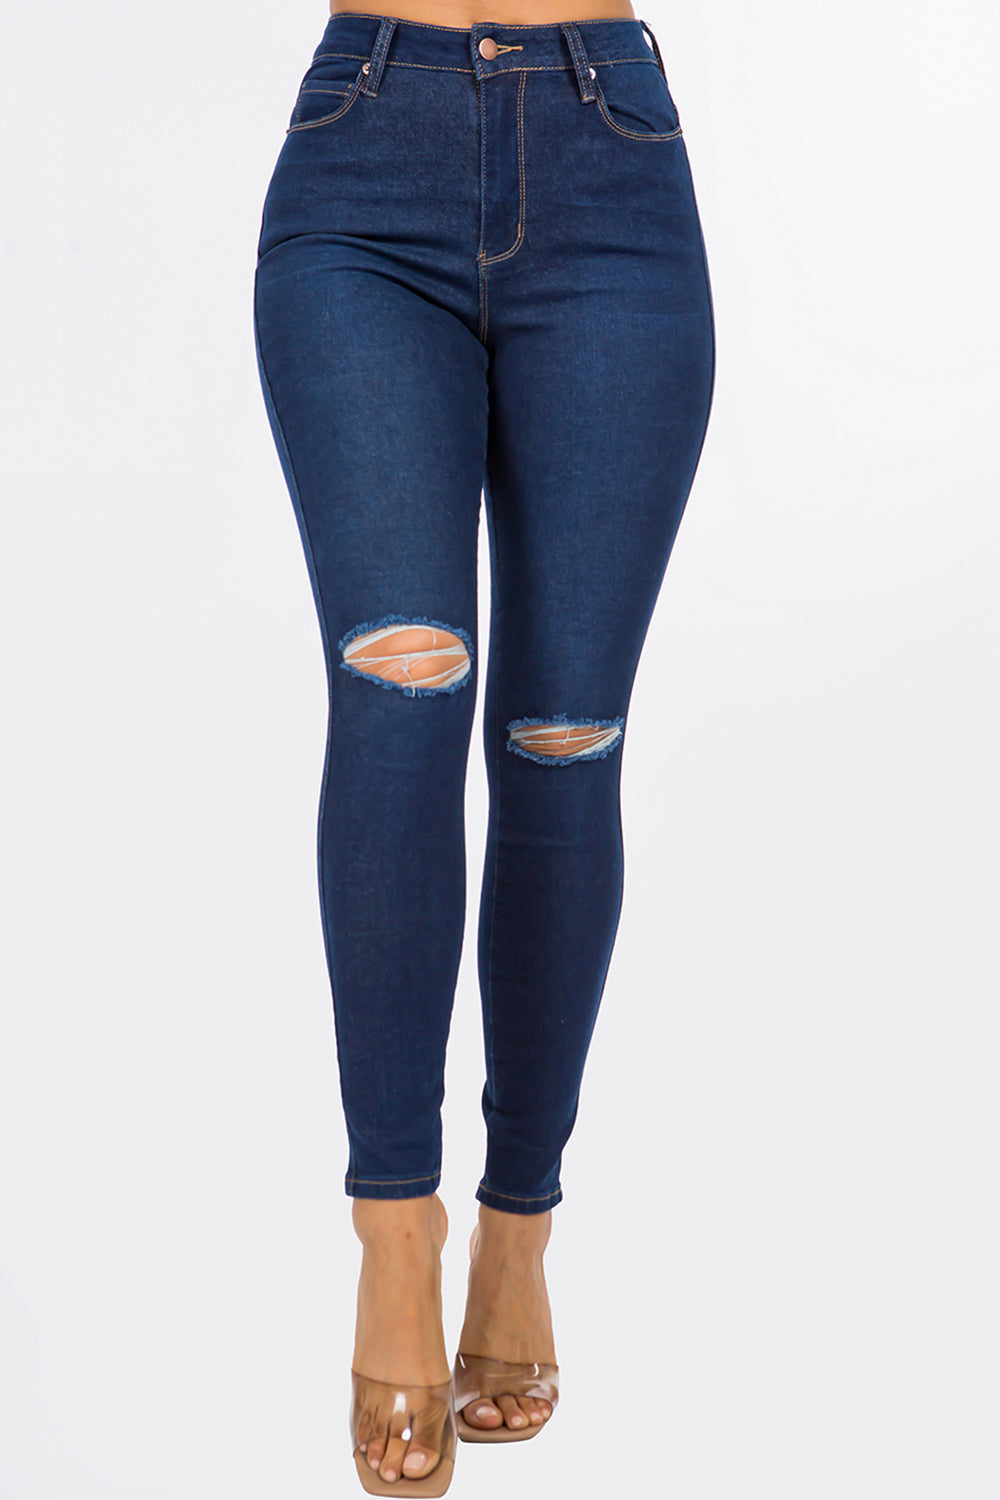 NEW Gianna Slit Knee High Rise Skinny Jeans Dark Blue WH3707